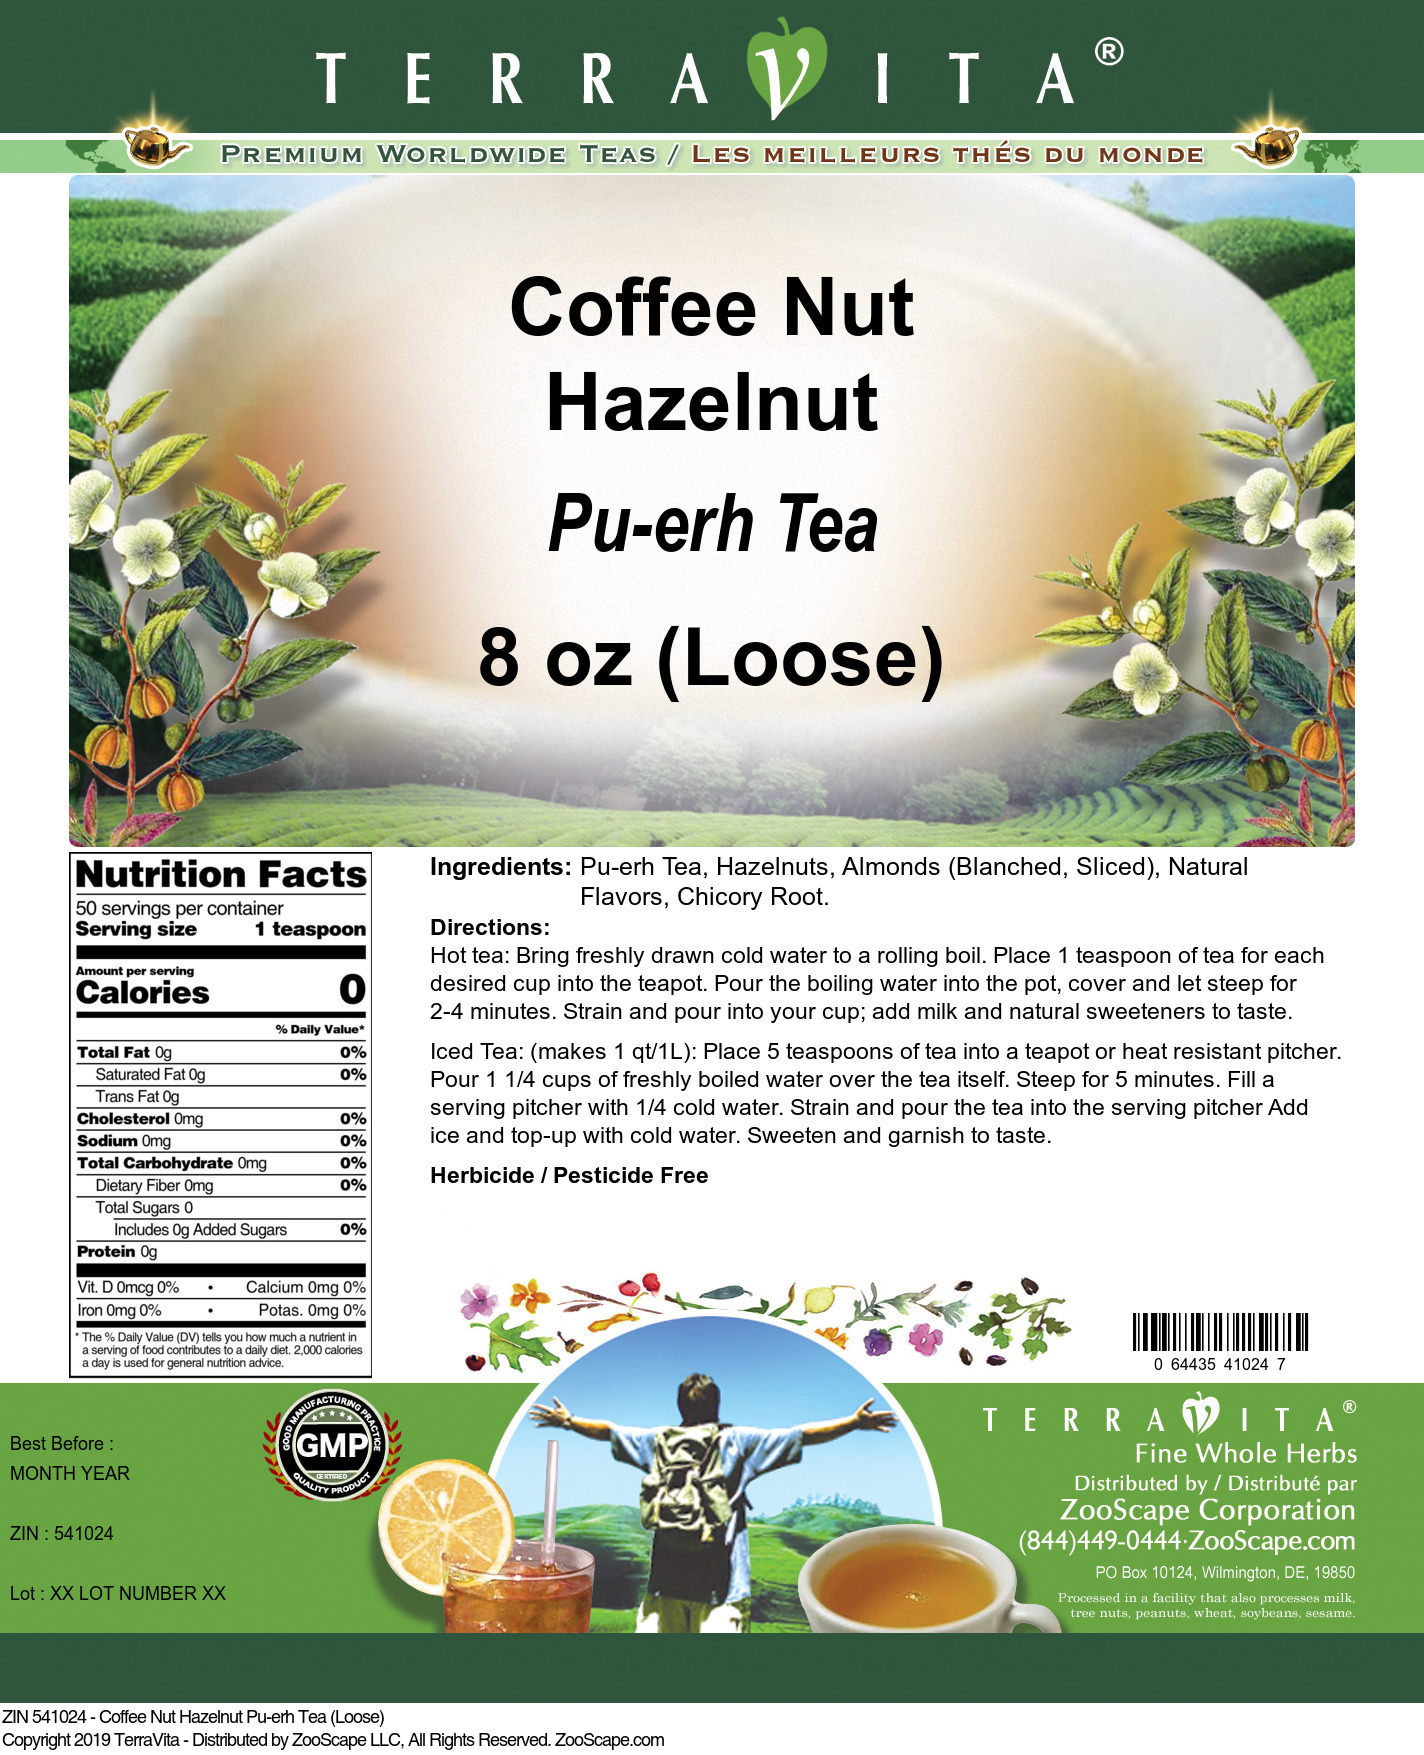 Coffee Nut Hazelnut Pu-erh Tea (Loose) - Label